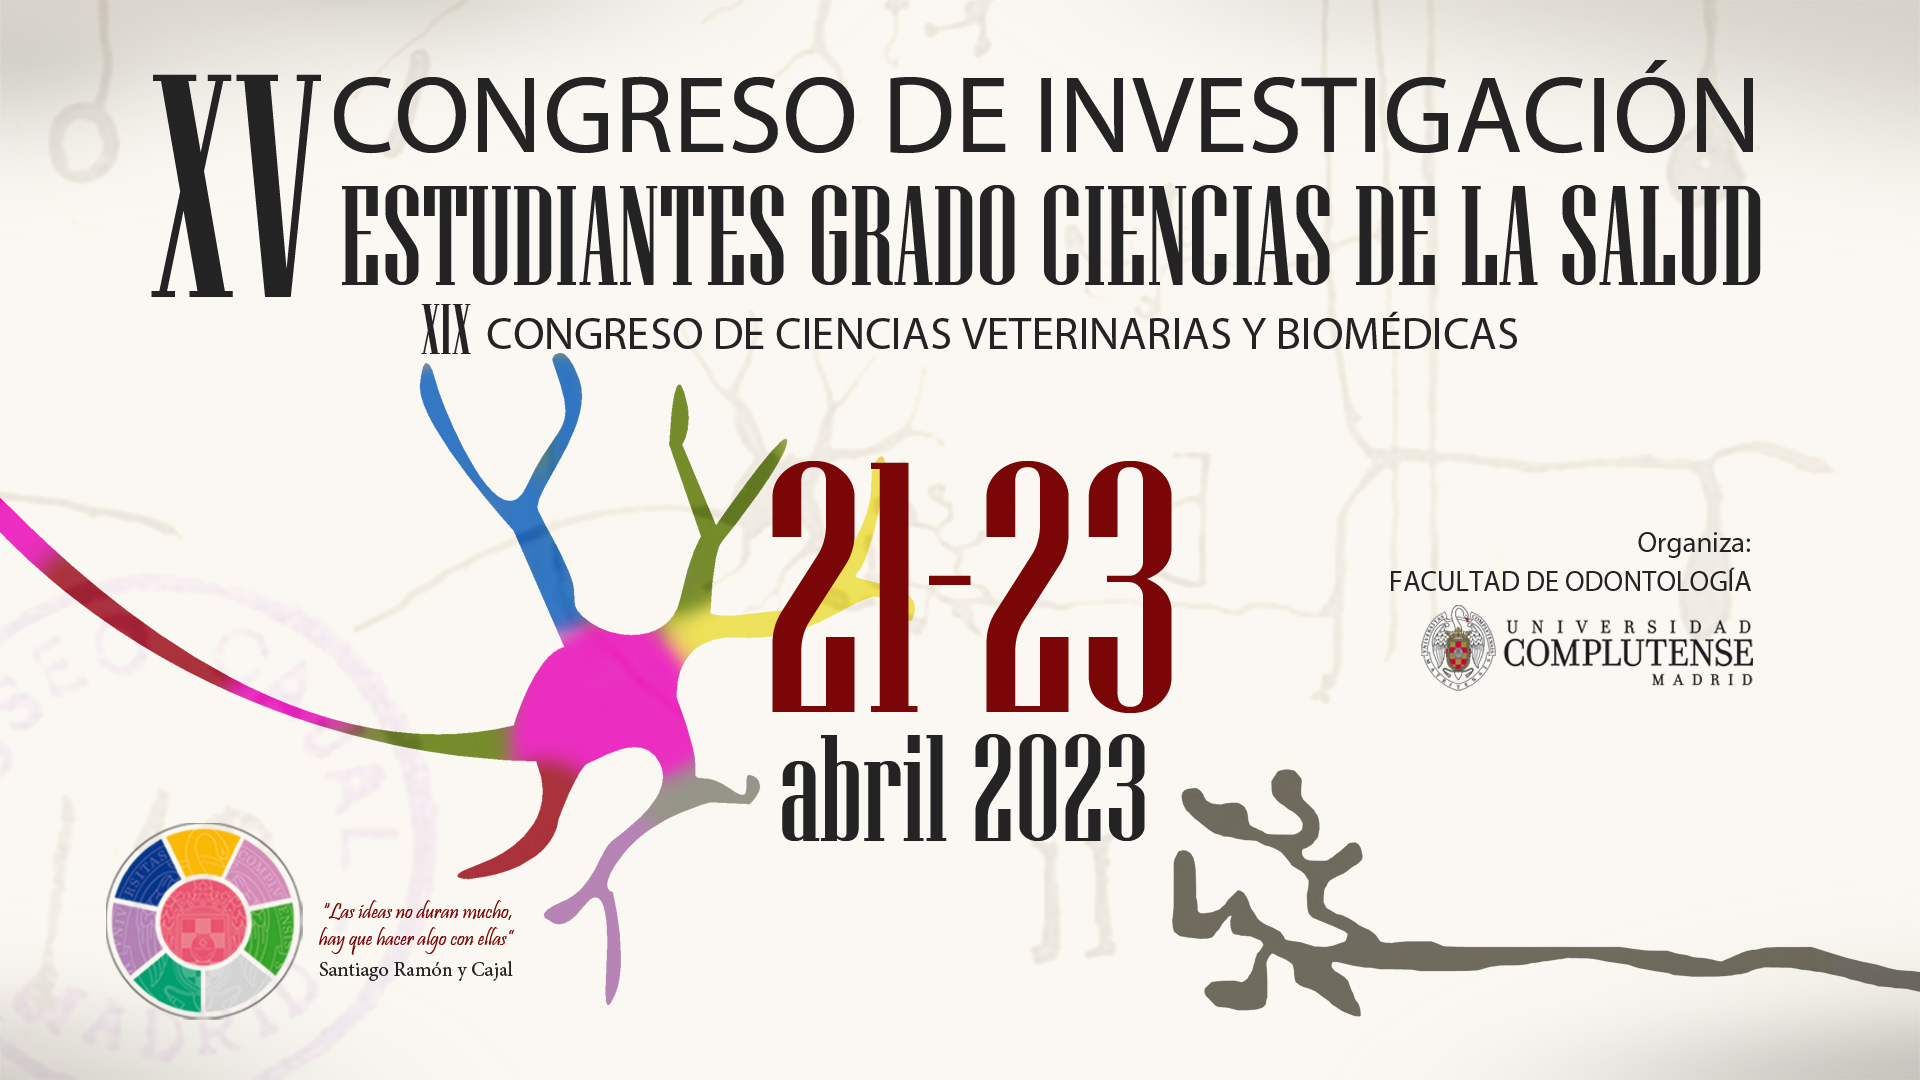 XV Congreso de Investigación de Estudiantes de Grado en Ciencias de la Salud. XIX Congreso de Ciencias Veterinarias y Biomédicas. 21 al 23 de abril de 2023